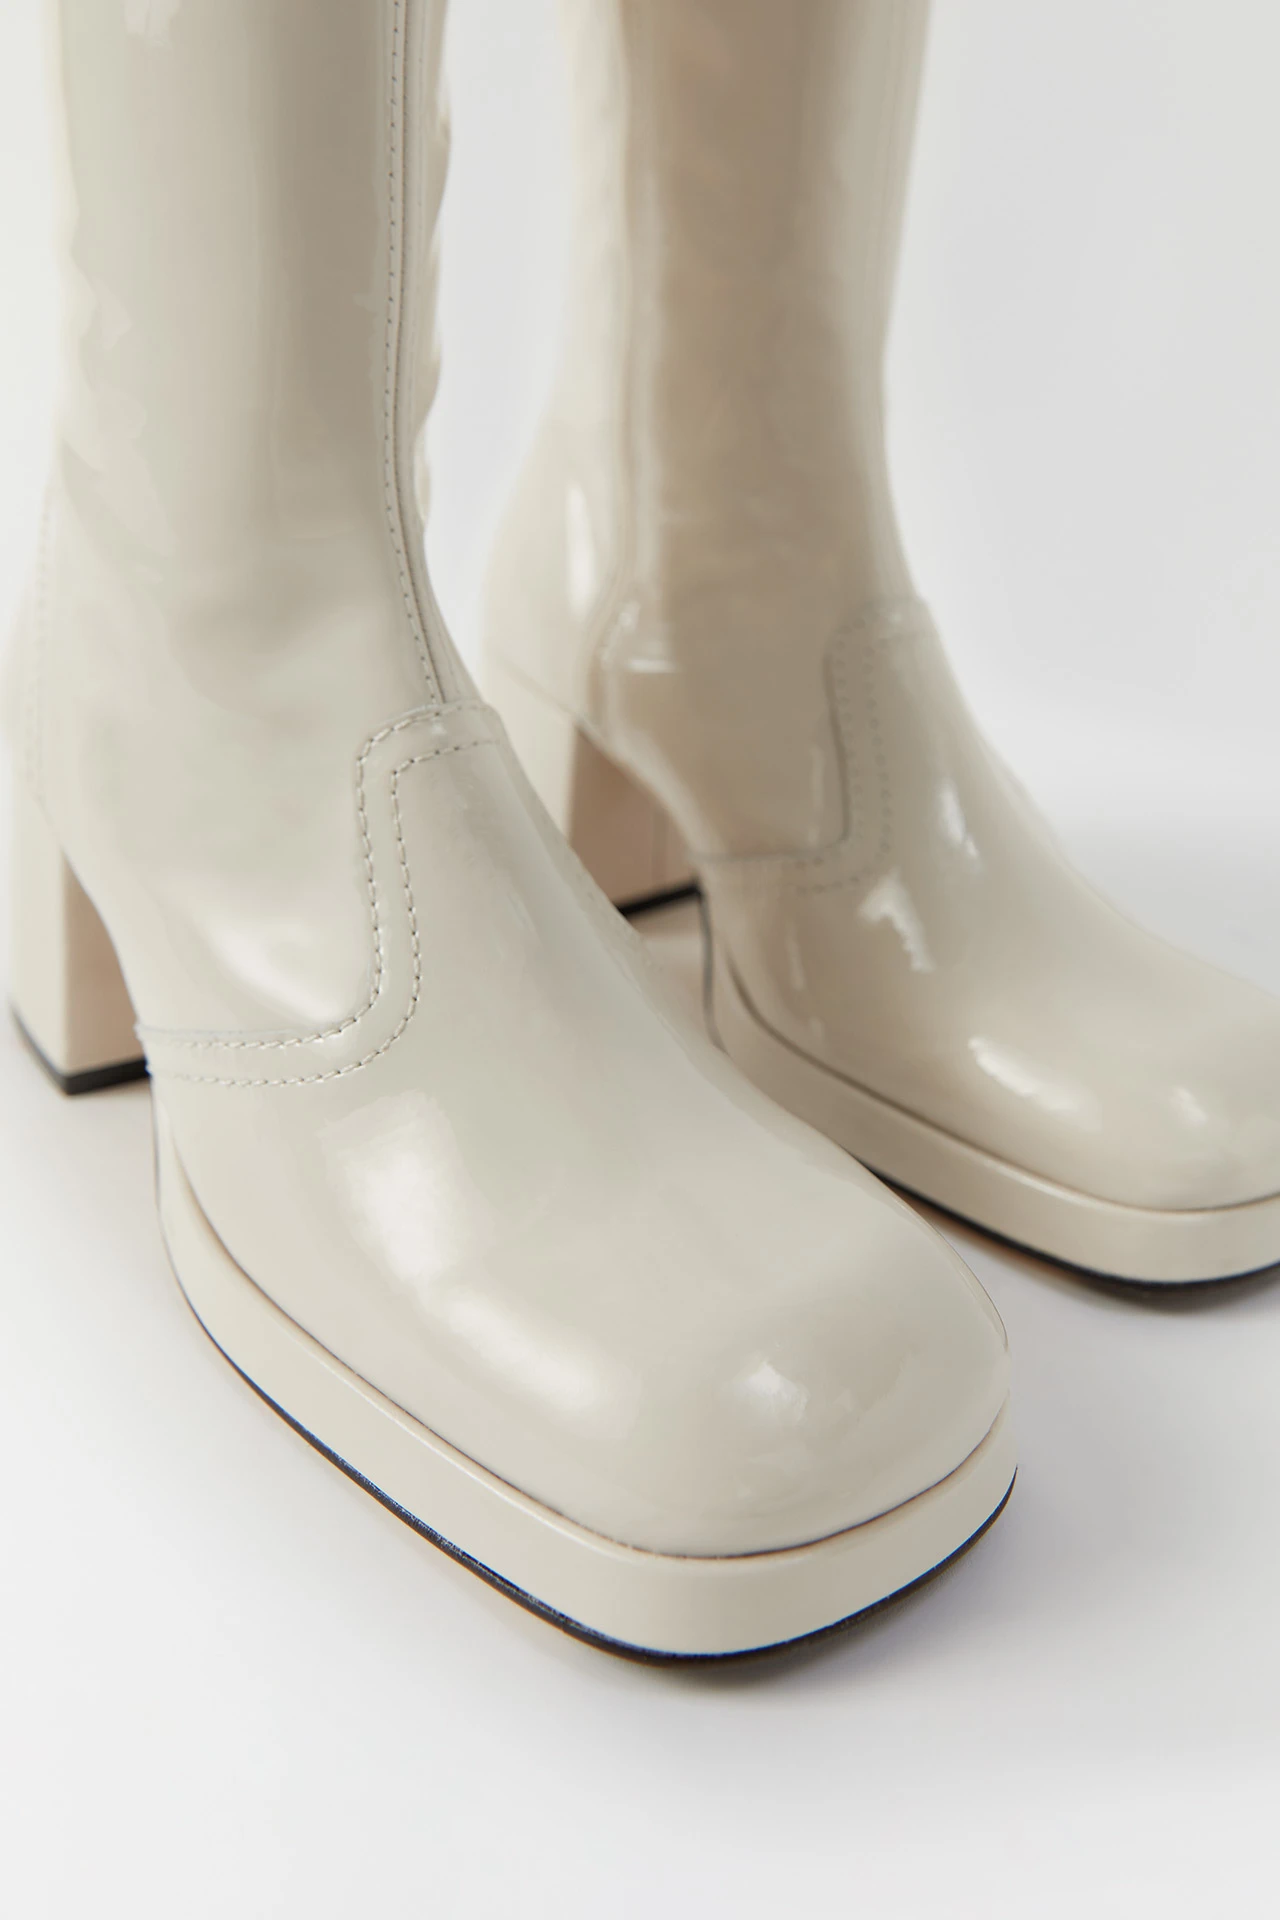 miista-cass-beige-patent-boots-2